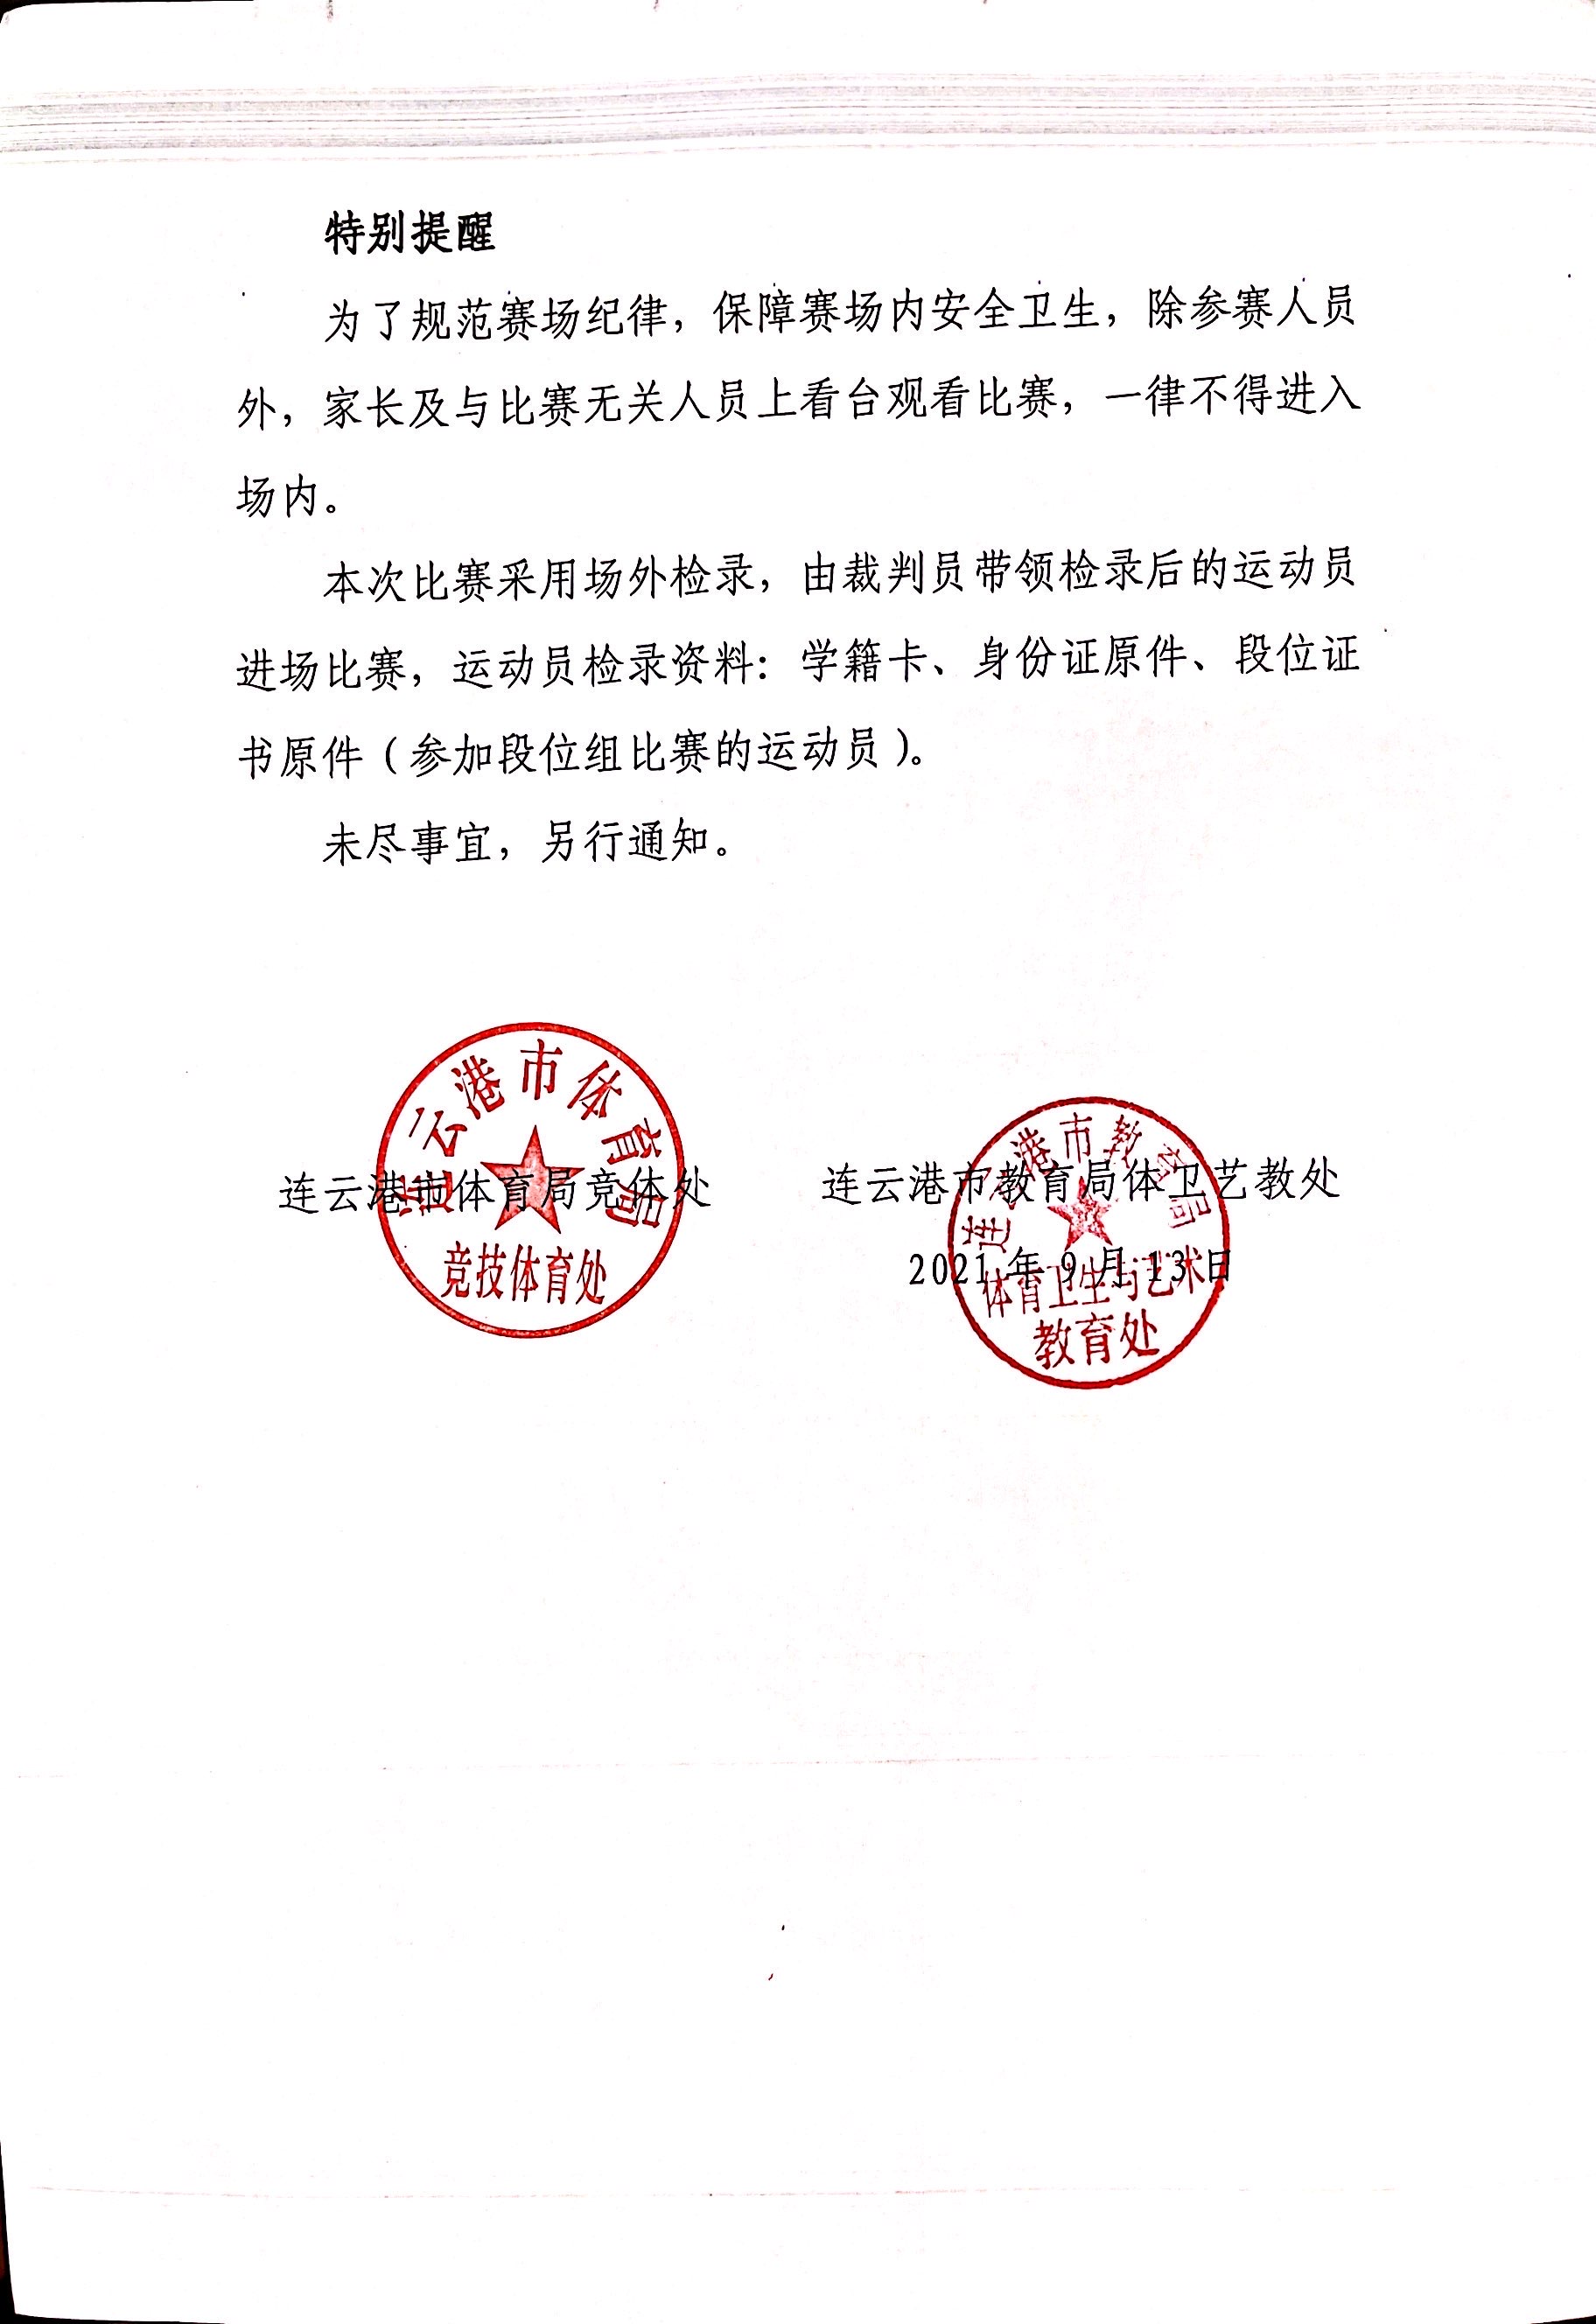 关于2021年连云港市中小学生乒乓球比赛补充说明.jpg